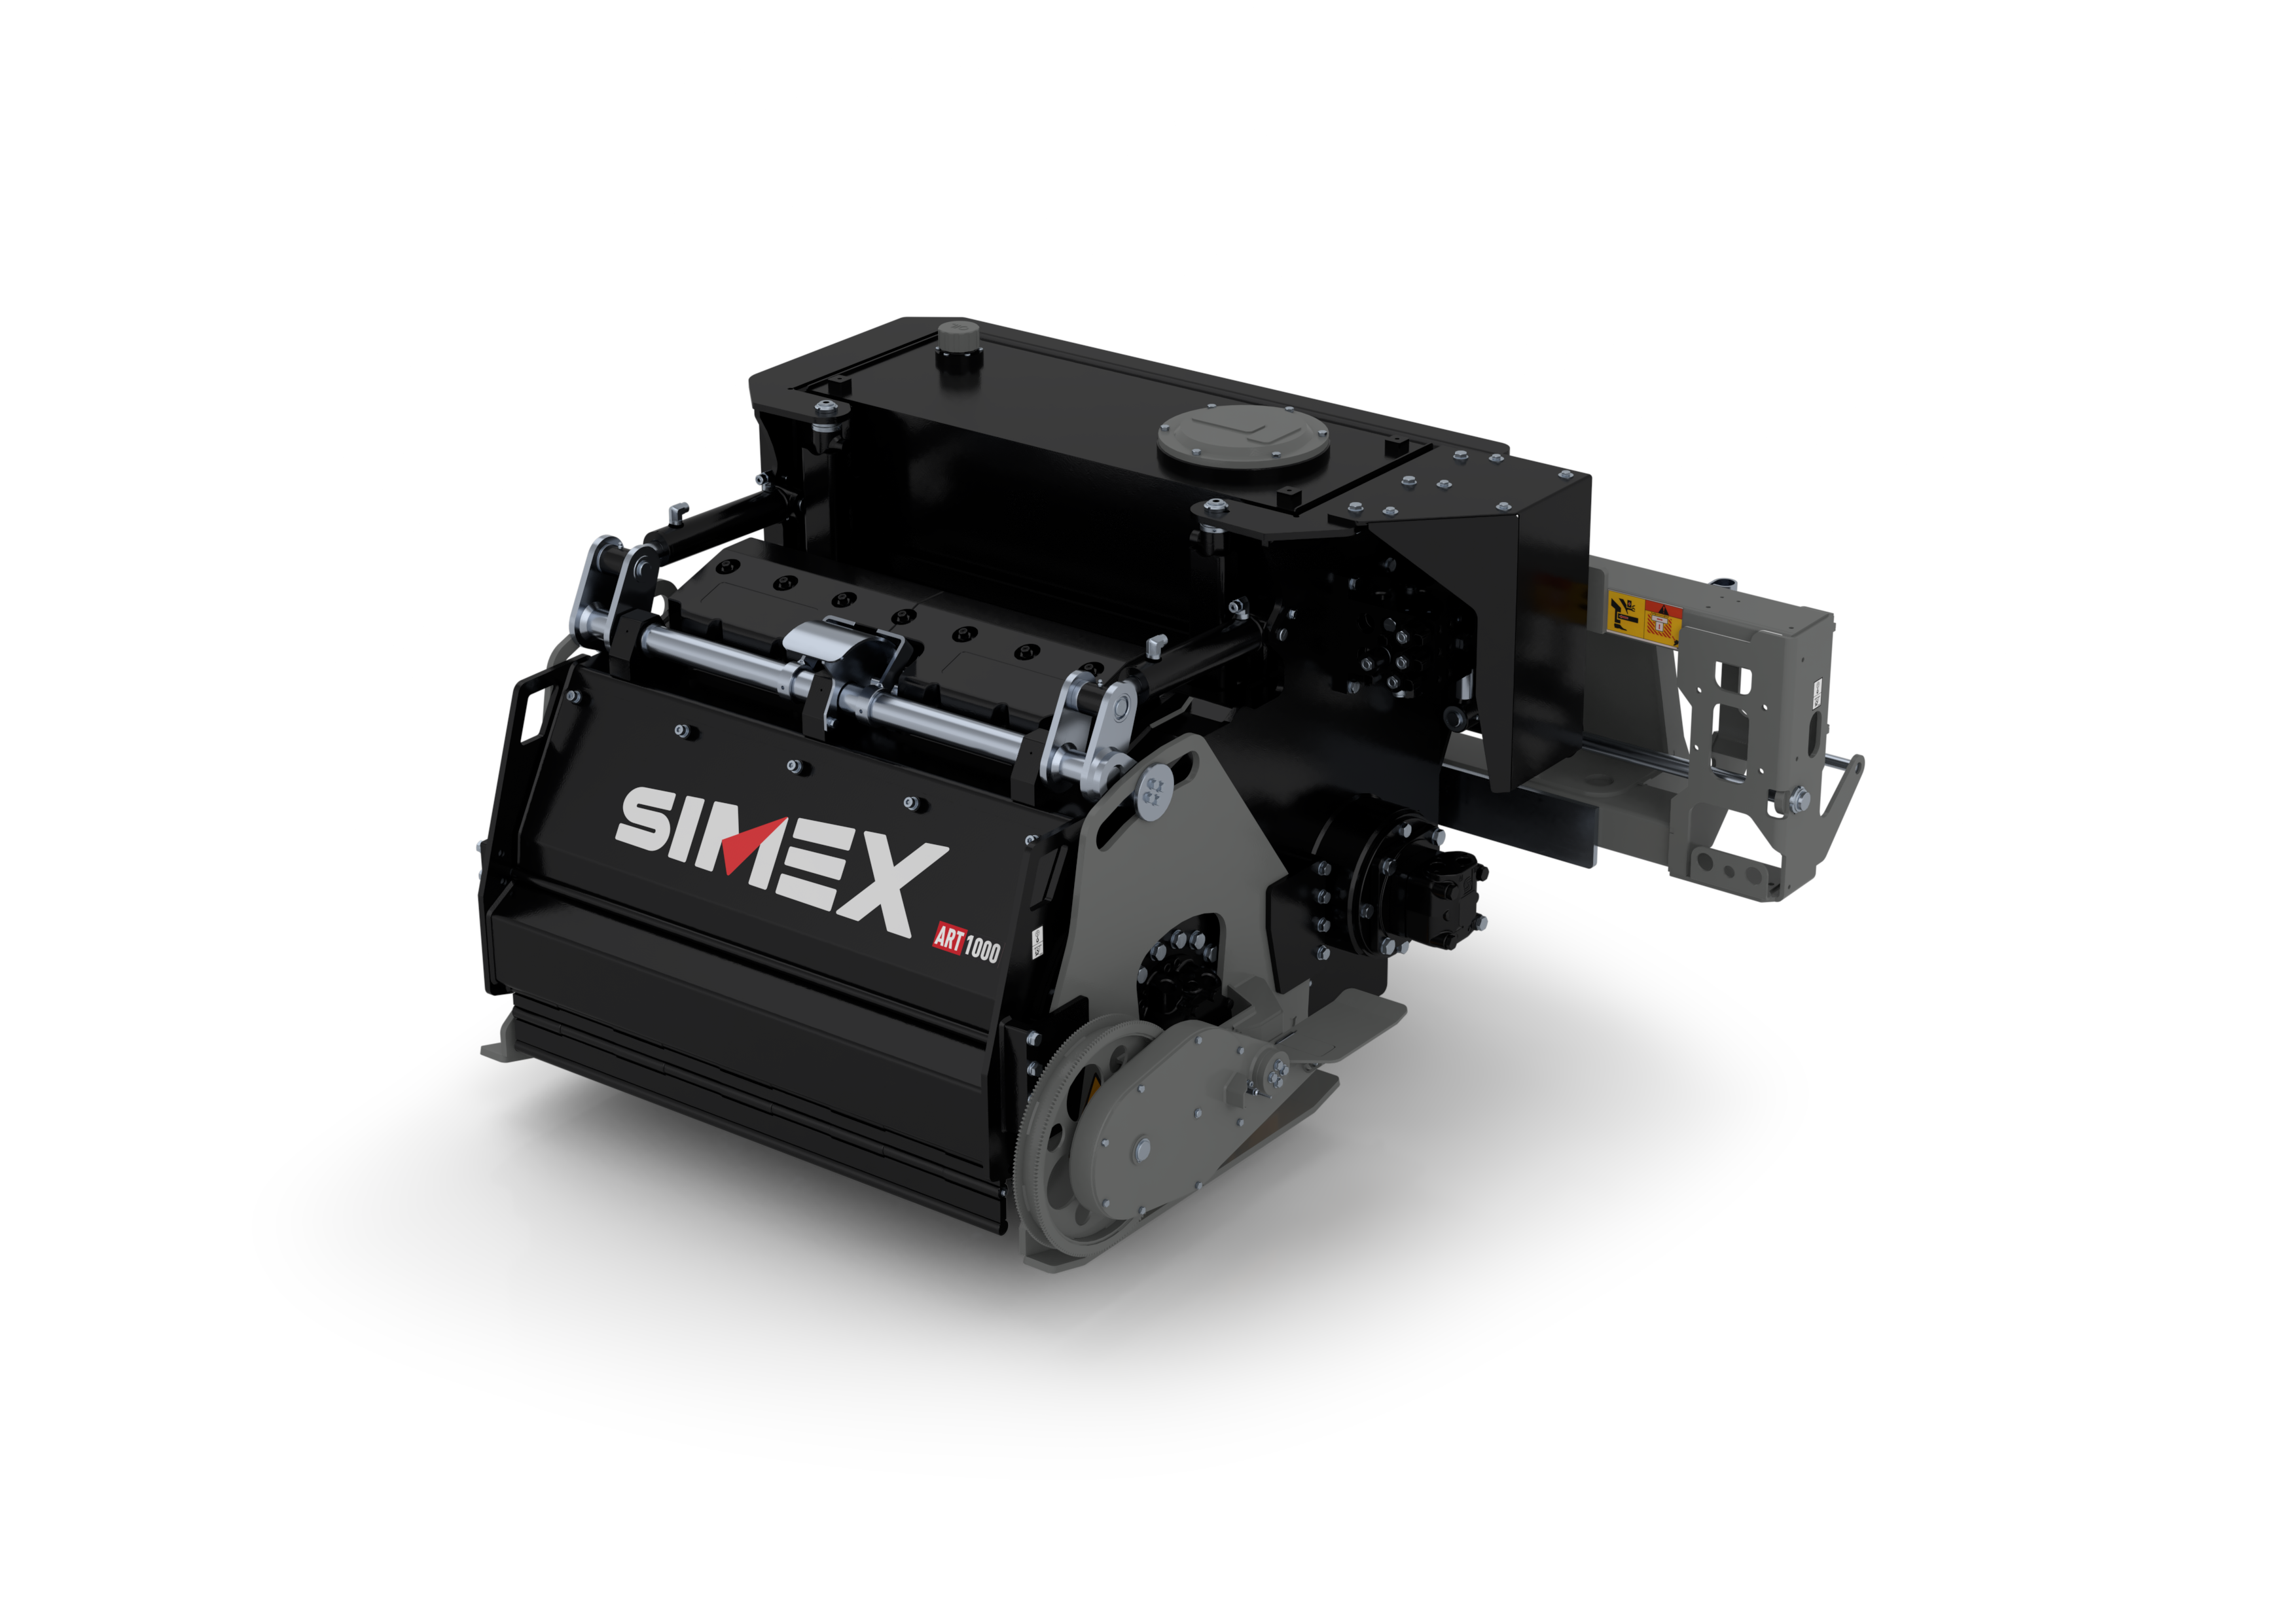 Simex ART1000 Asphalt Regenerierung das neue Hightechprodukt von Simex, eine Maschine für die komplette Aufarbeitung von Asphalt an Ort und Stelle. Weniger Personal, kein Materialtransport spart Kosten und schont die Umwelt.